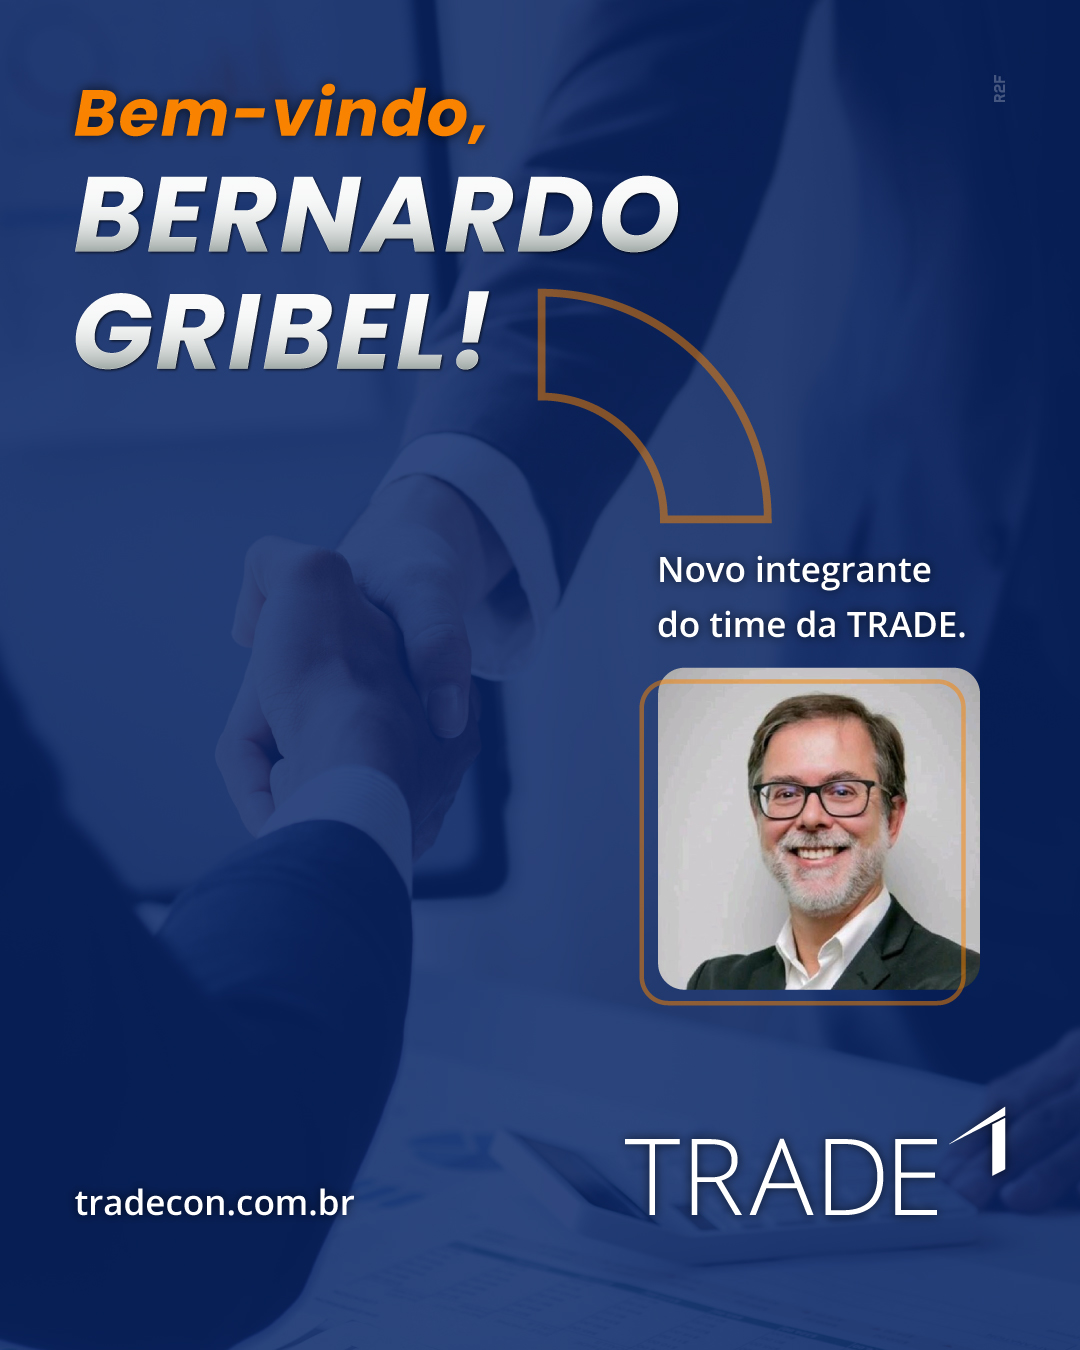 Bernardo Gribel é o novo integrante do time da TRADE